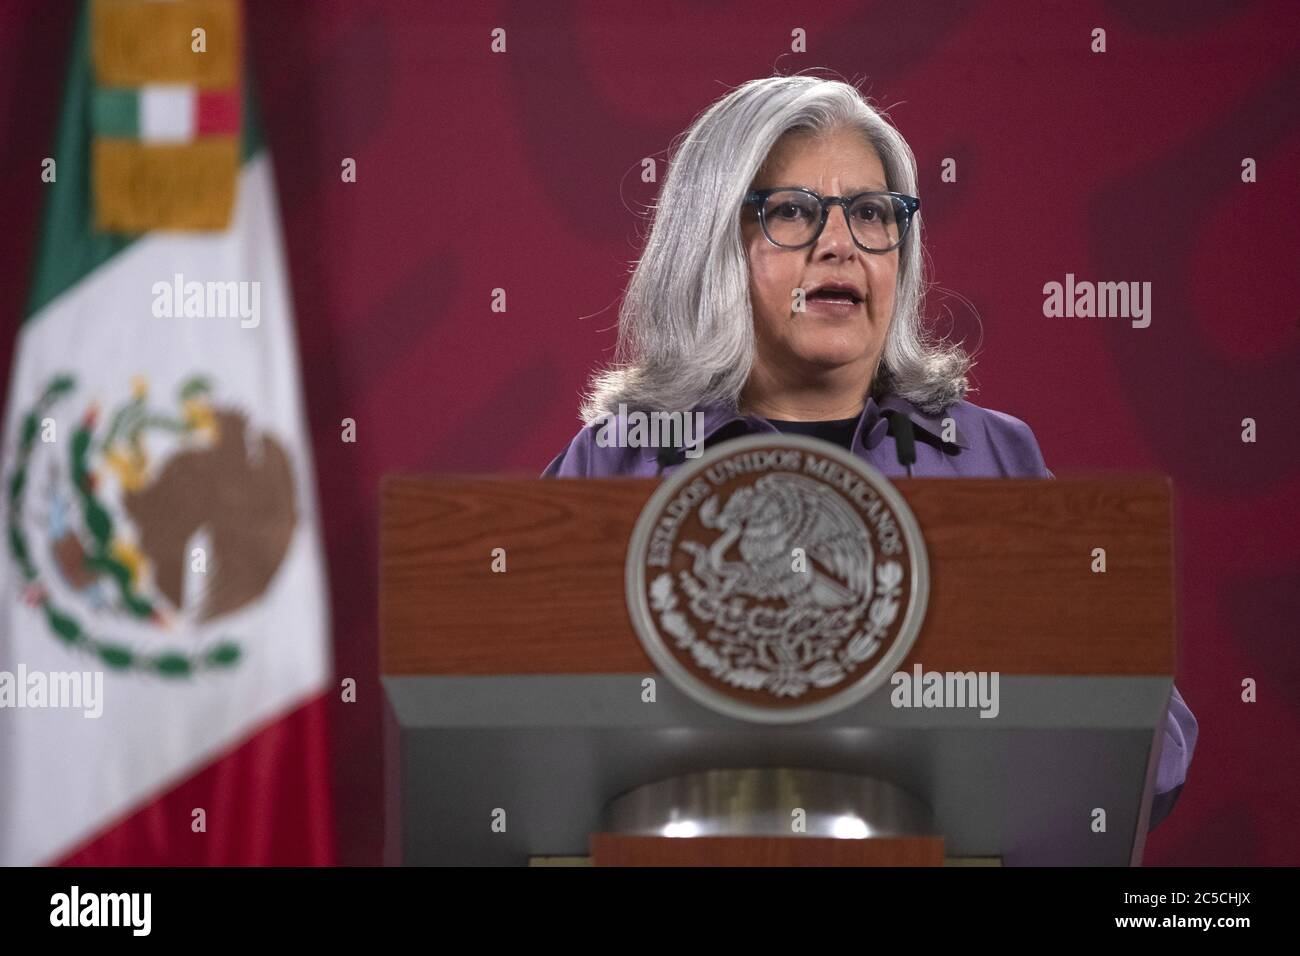 Mexico, Mexique. 1er juillet 2020. La ministre de l'économie mexicaine Graciela Marquez prend la parole lors d'une conférence de presse à Mexico, Mexique, le 1er juillet 2020. L'Accord États-Unis-Mexique-Canada (USMCA) est entré officiellement en vigueur mercredi, remplaçant l'Accord de libre-échange nord-américain (ALENA), vieux de 26 ans. Crédit: STR/Xinhua/Alay Live News Banque D'Images